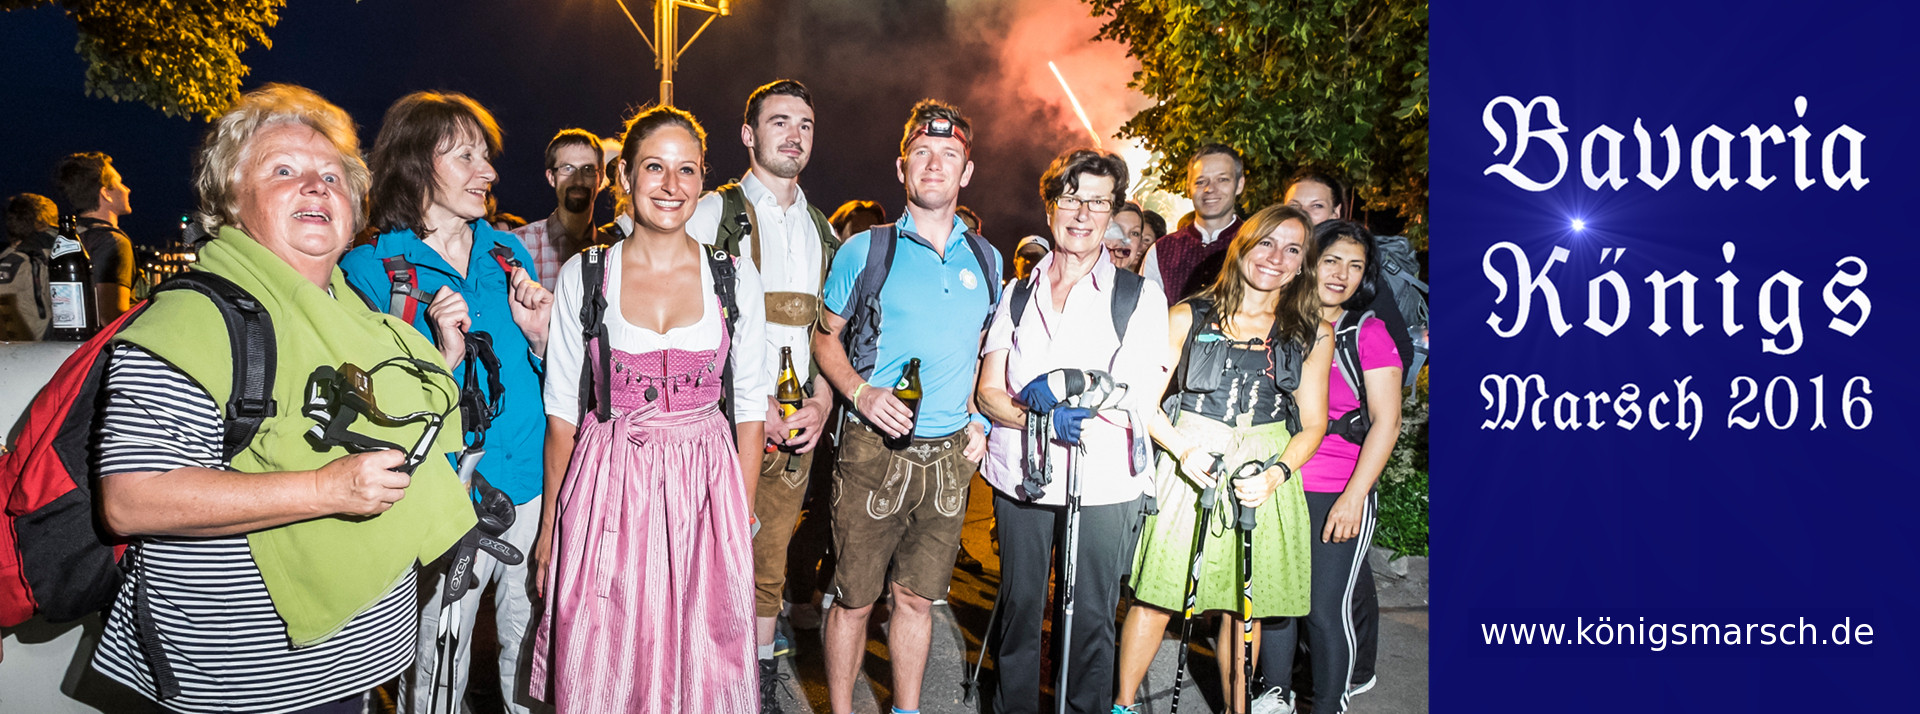 Europa-247.de - Europa Infos & Europa Tipps | Start zur Kultur-Nacht-Wanderung in Starnberg